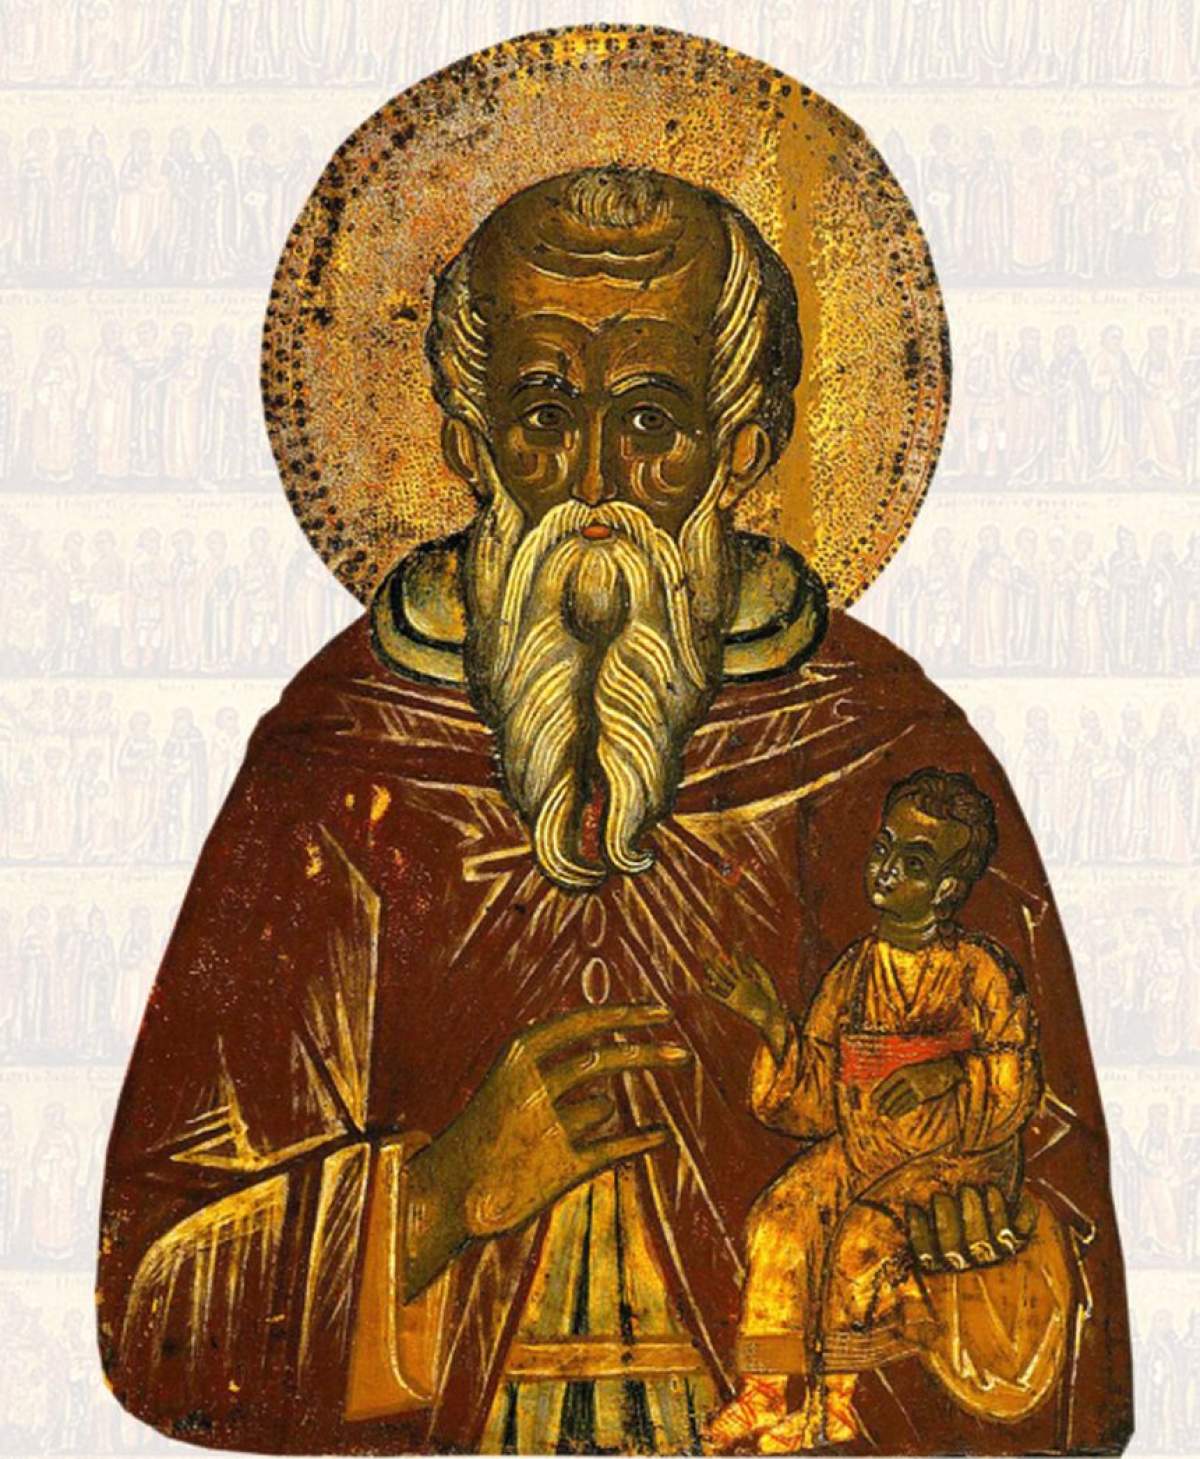 Sfântul Stelian, sărbătorit pe 26 noiembrie. Rugăciune puternică pentru ocrotirea familiei pe care este bine să o rosteşti